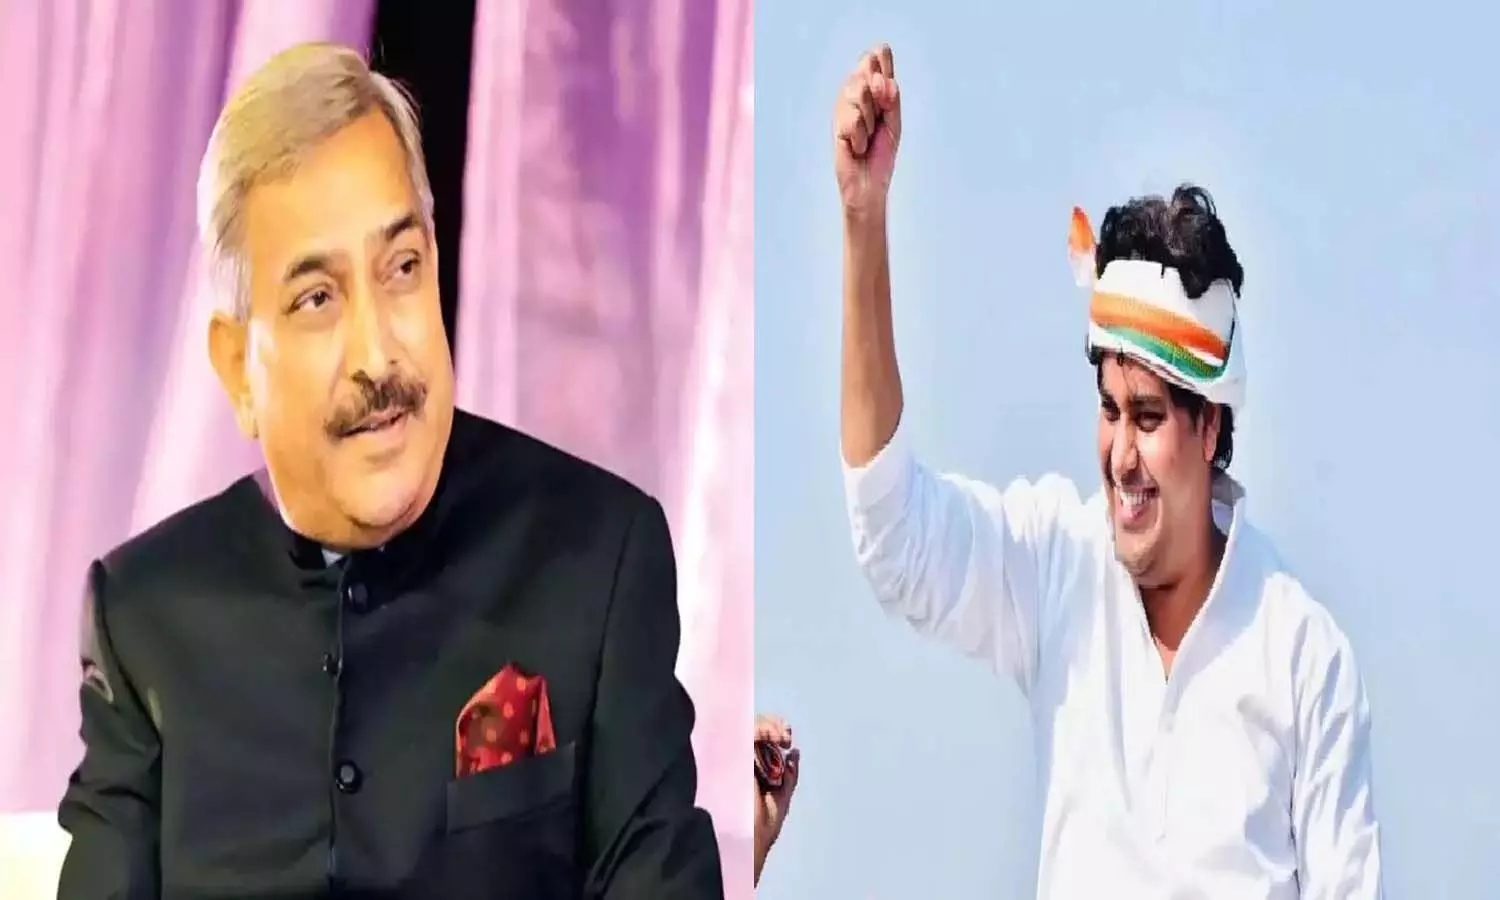 Congress nominated Imran Pratapgarhi and Pramod Tiwari as Rajya Sabha candidates